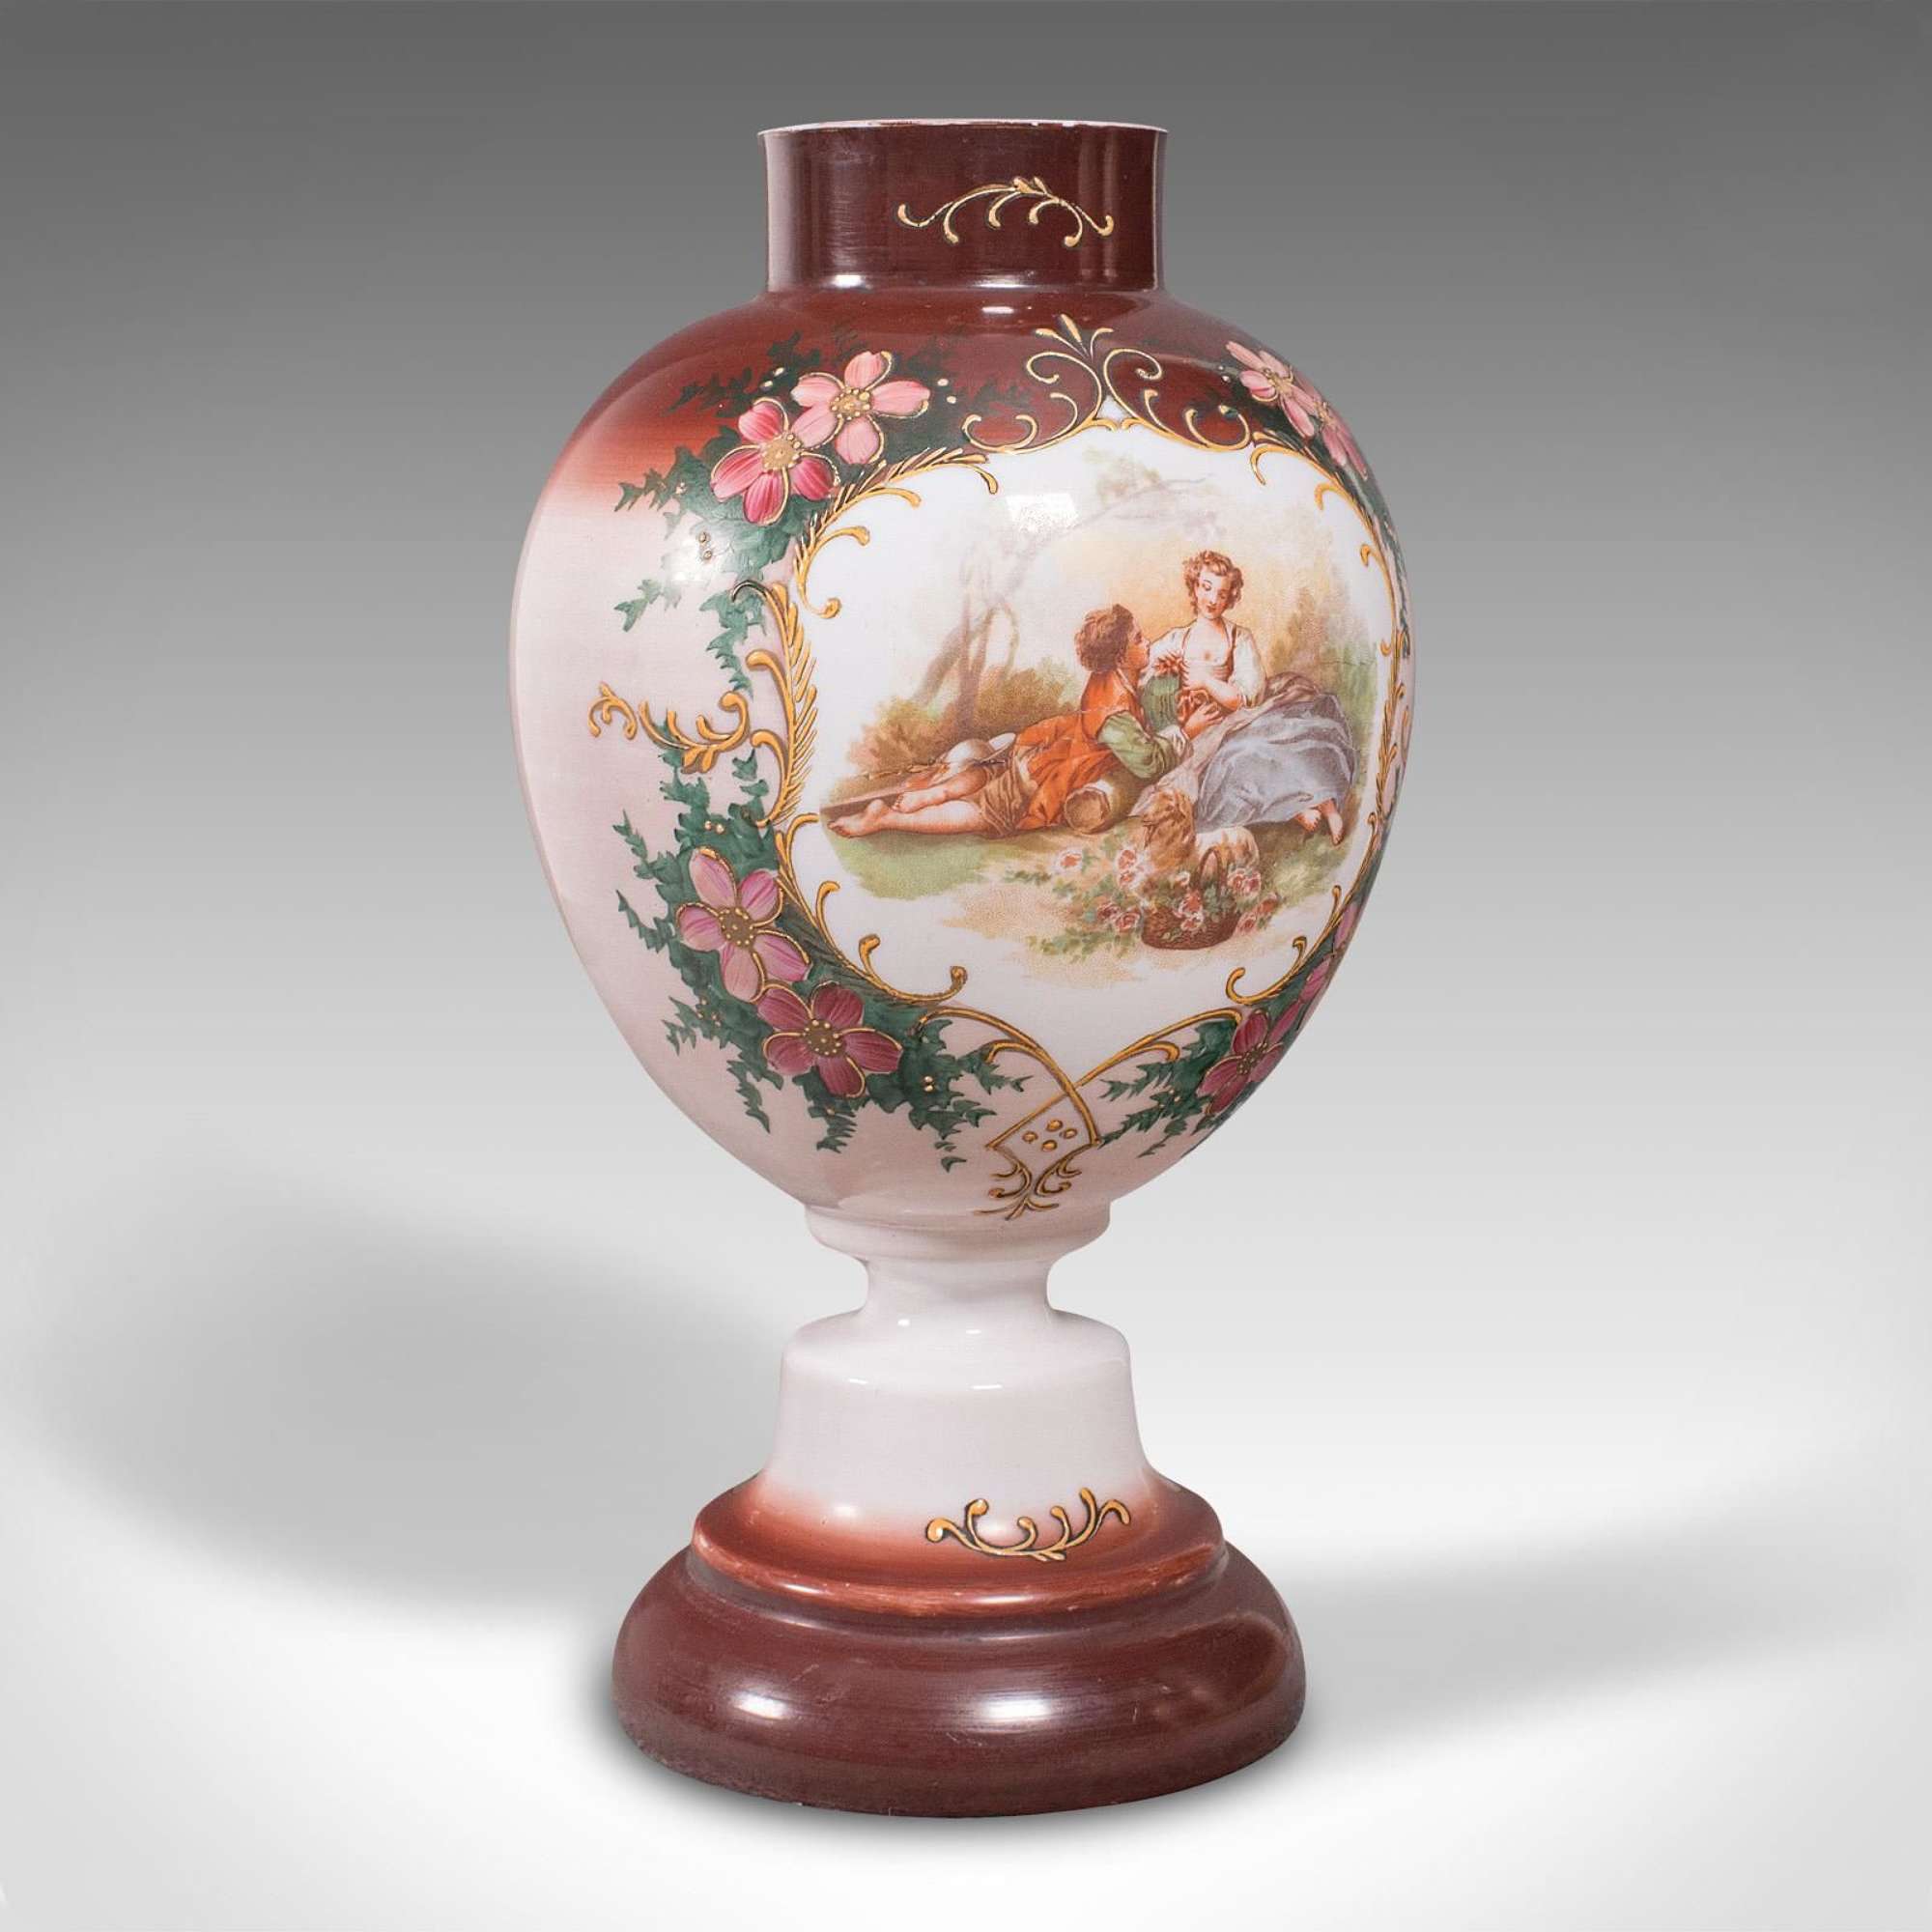 Antique Decorative Flower Vase, Continental, Milk Glass, Baluster Urn, Victorian